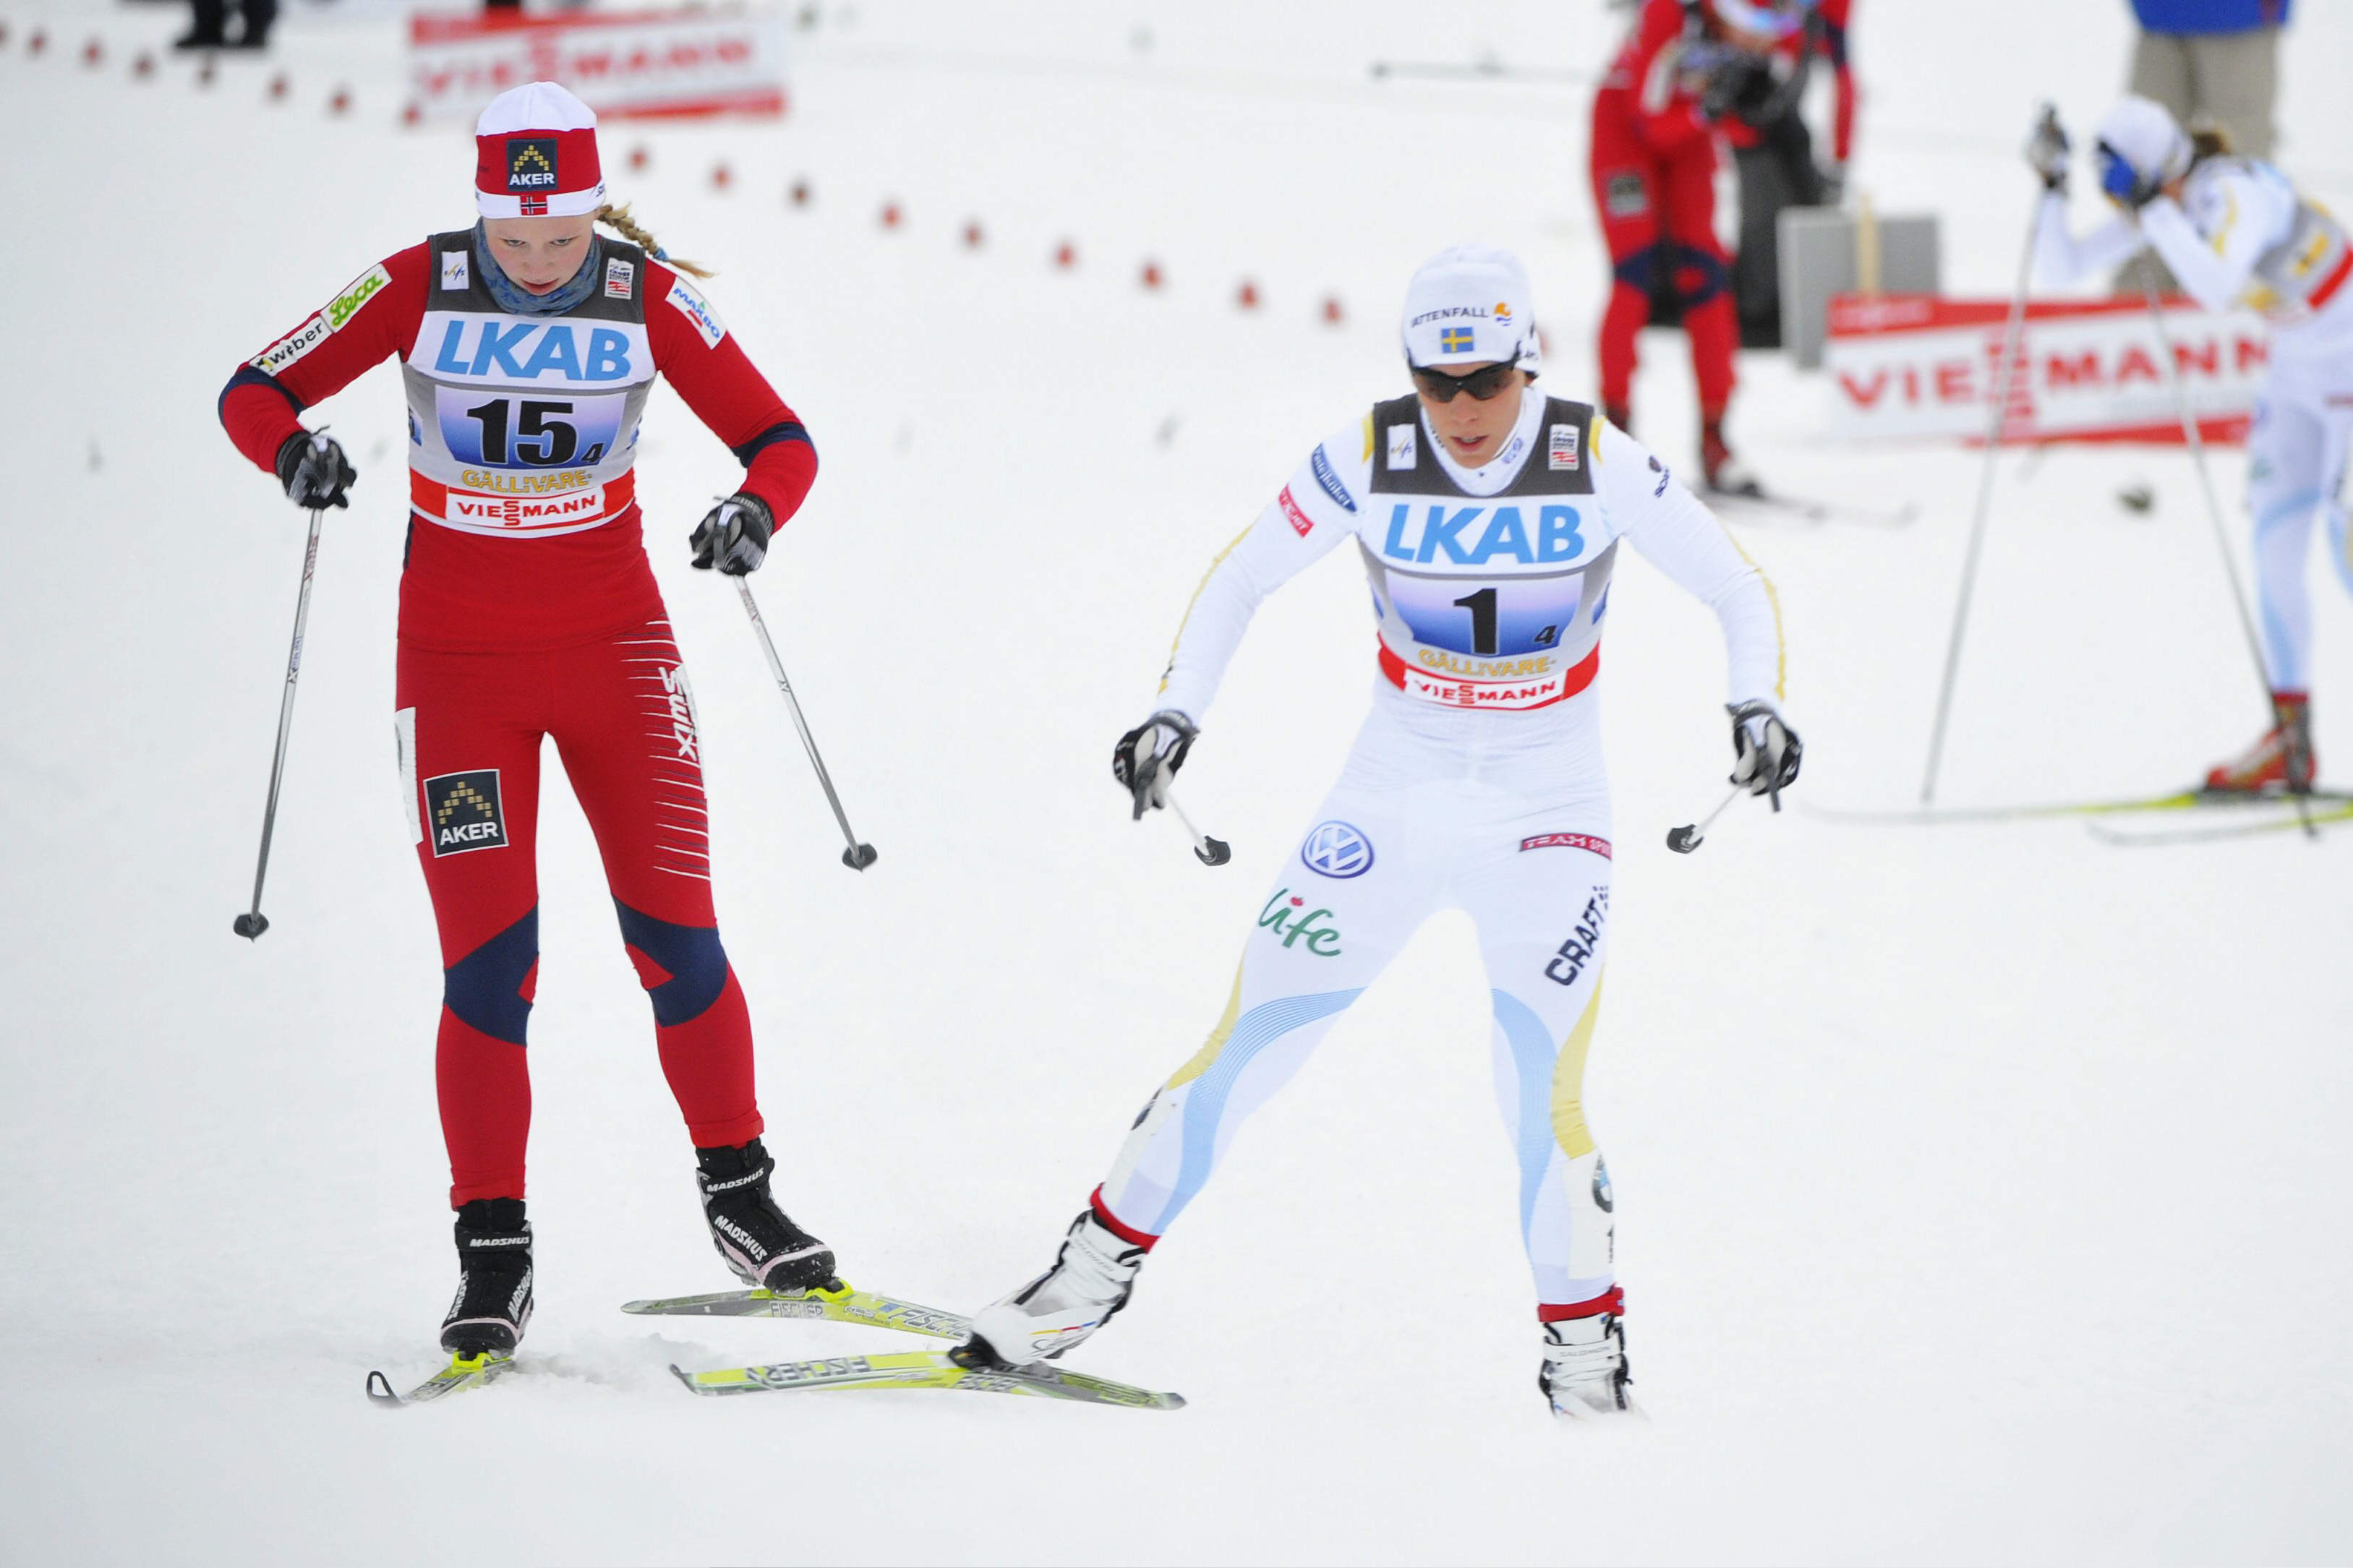 Sverige, Marit Björgren, skidor, Charlotte Kalla, Norge, Stafett